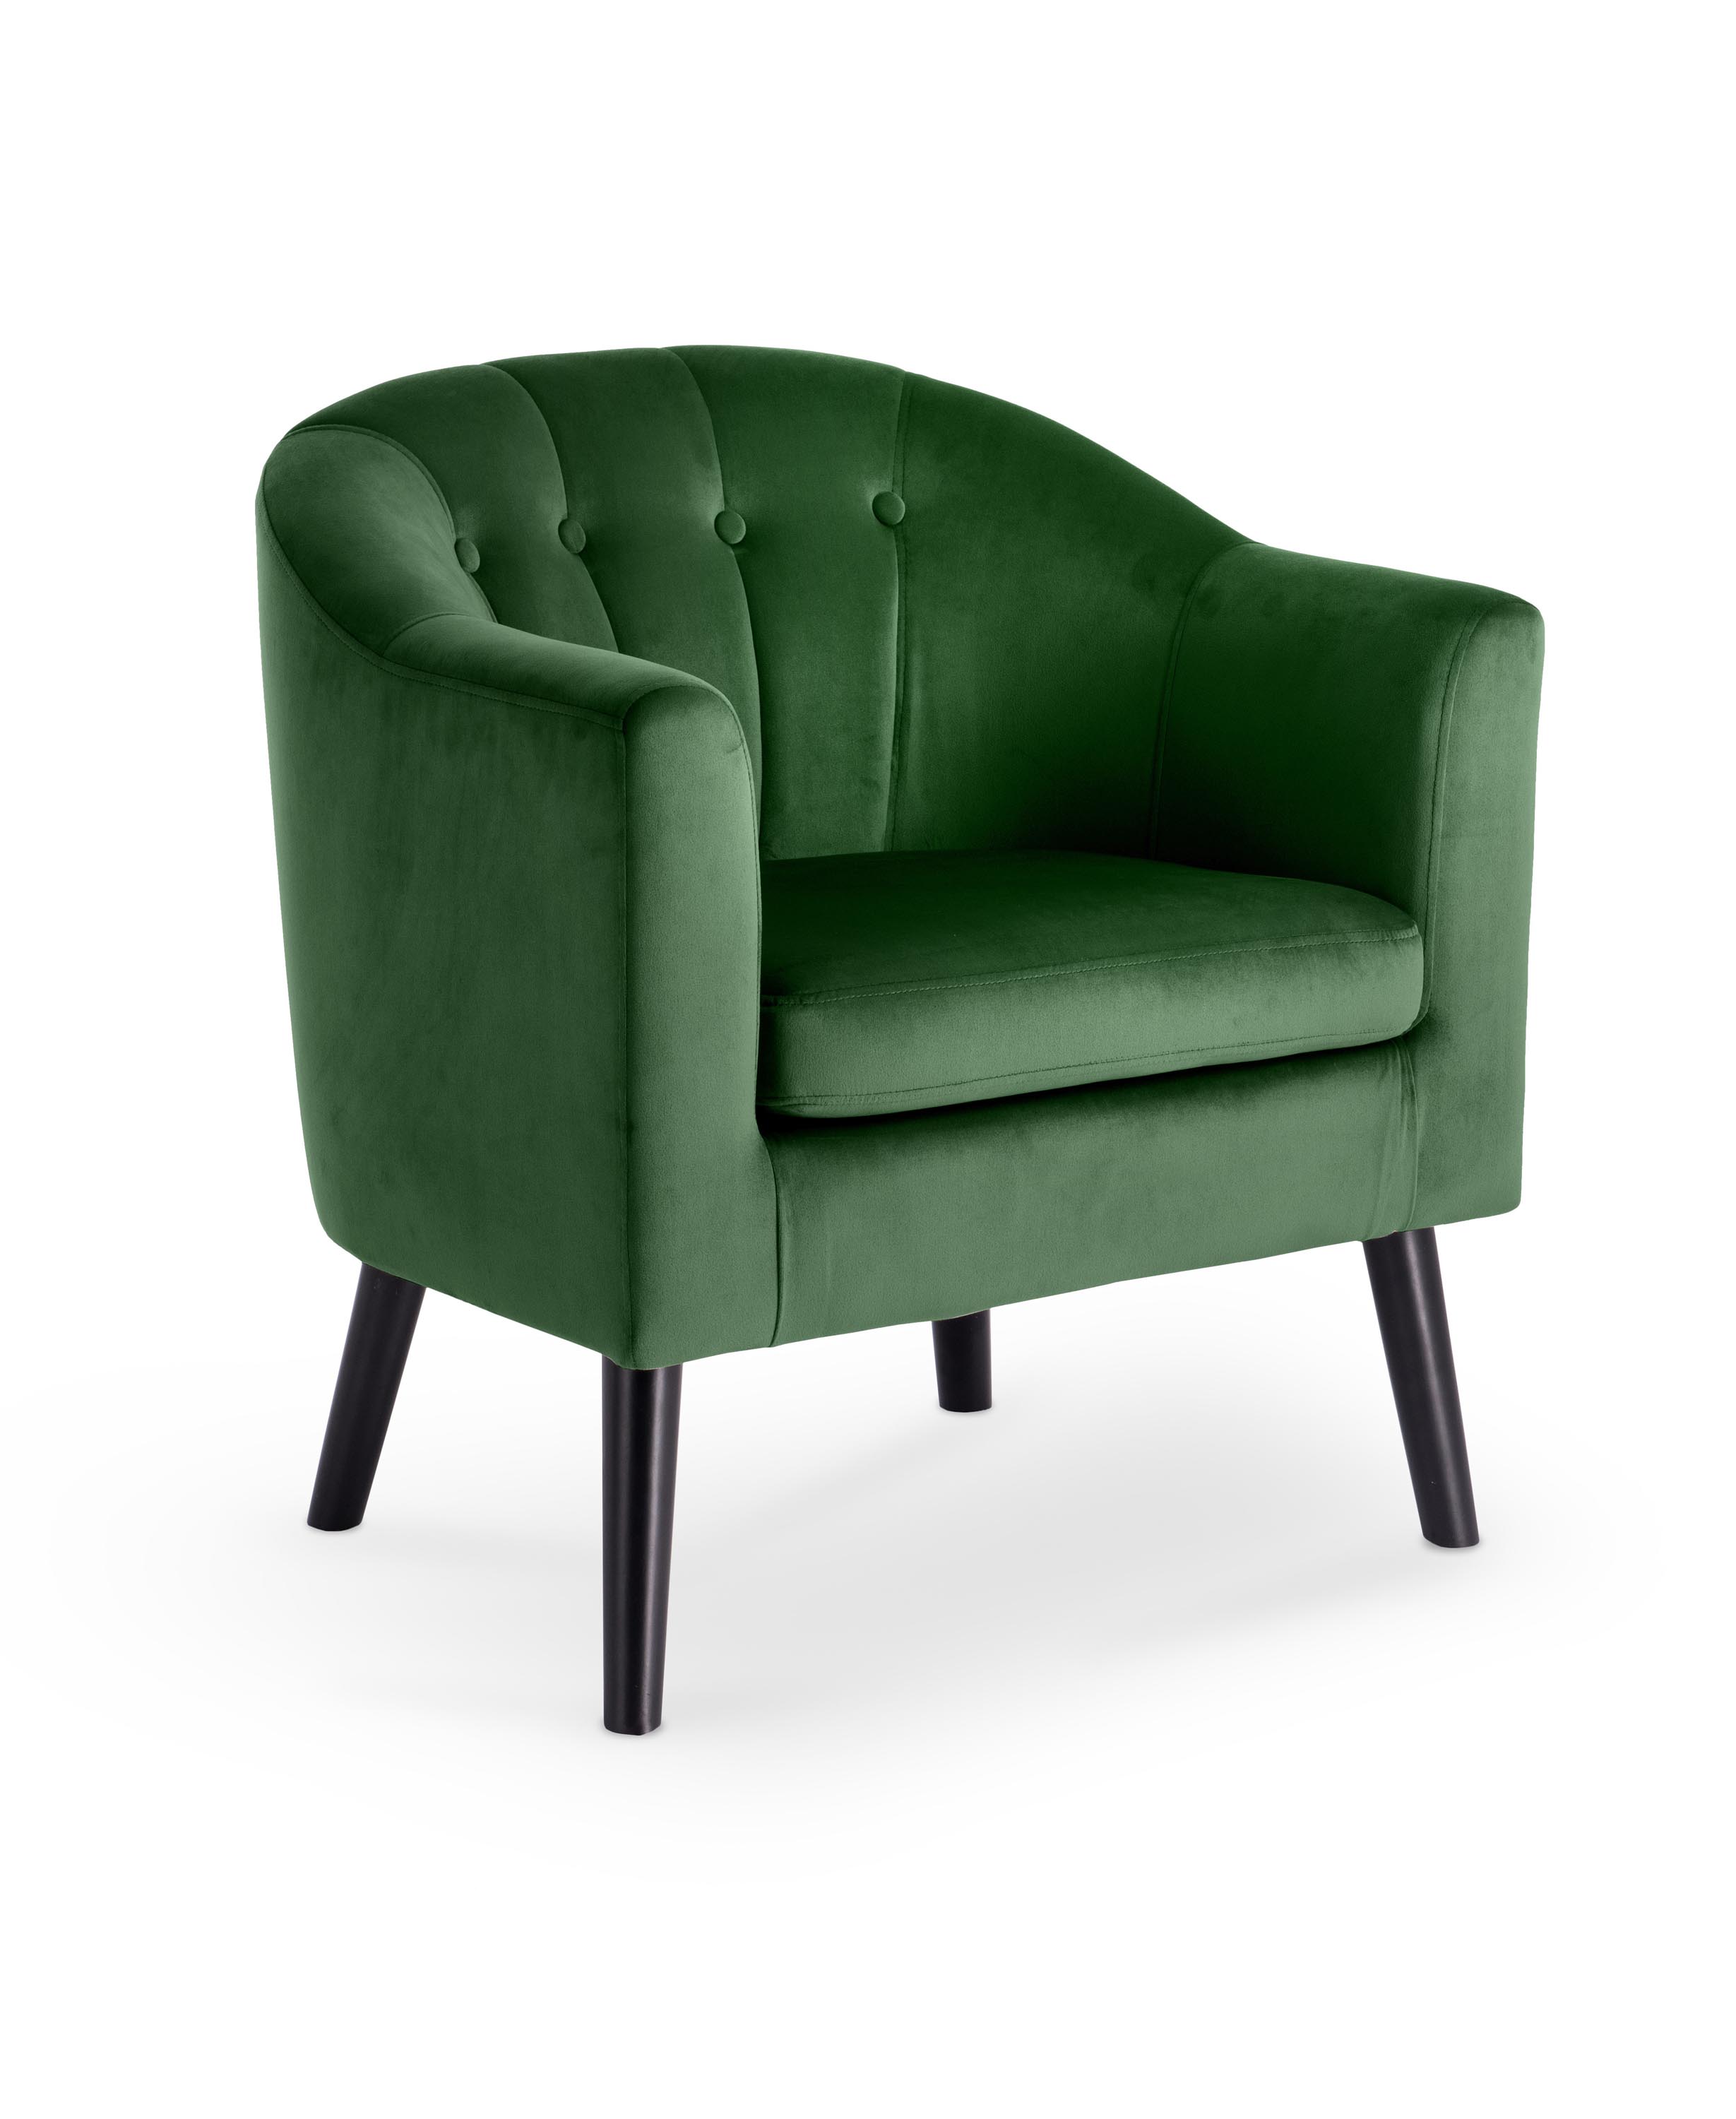 MARSHAL fotel wypoczynkowy ciemny zielony marshal fotel wypoczynkowy ciemny zielony